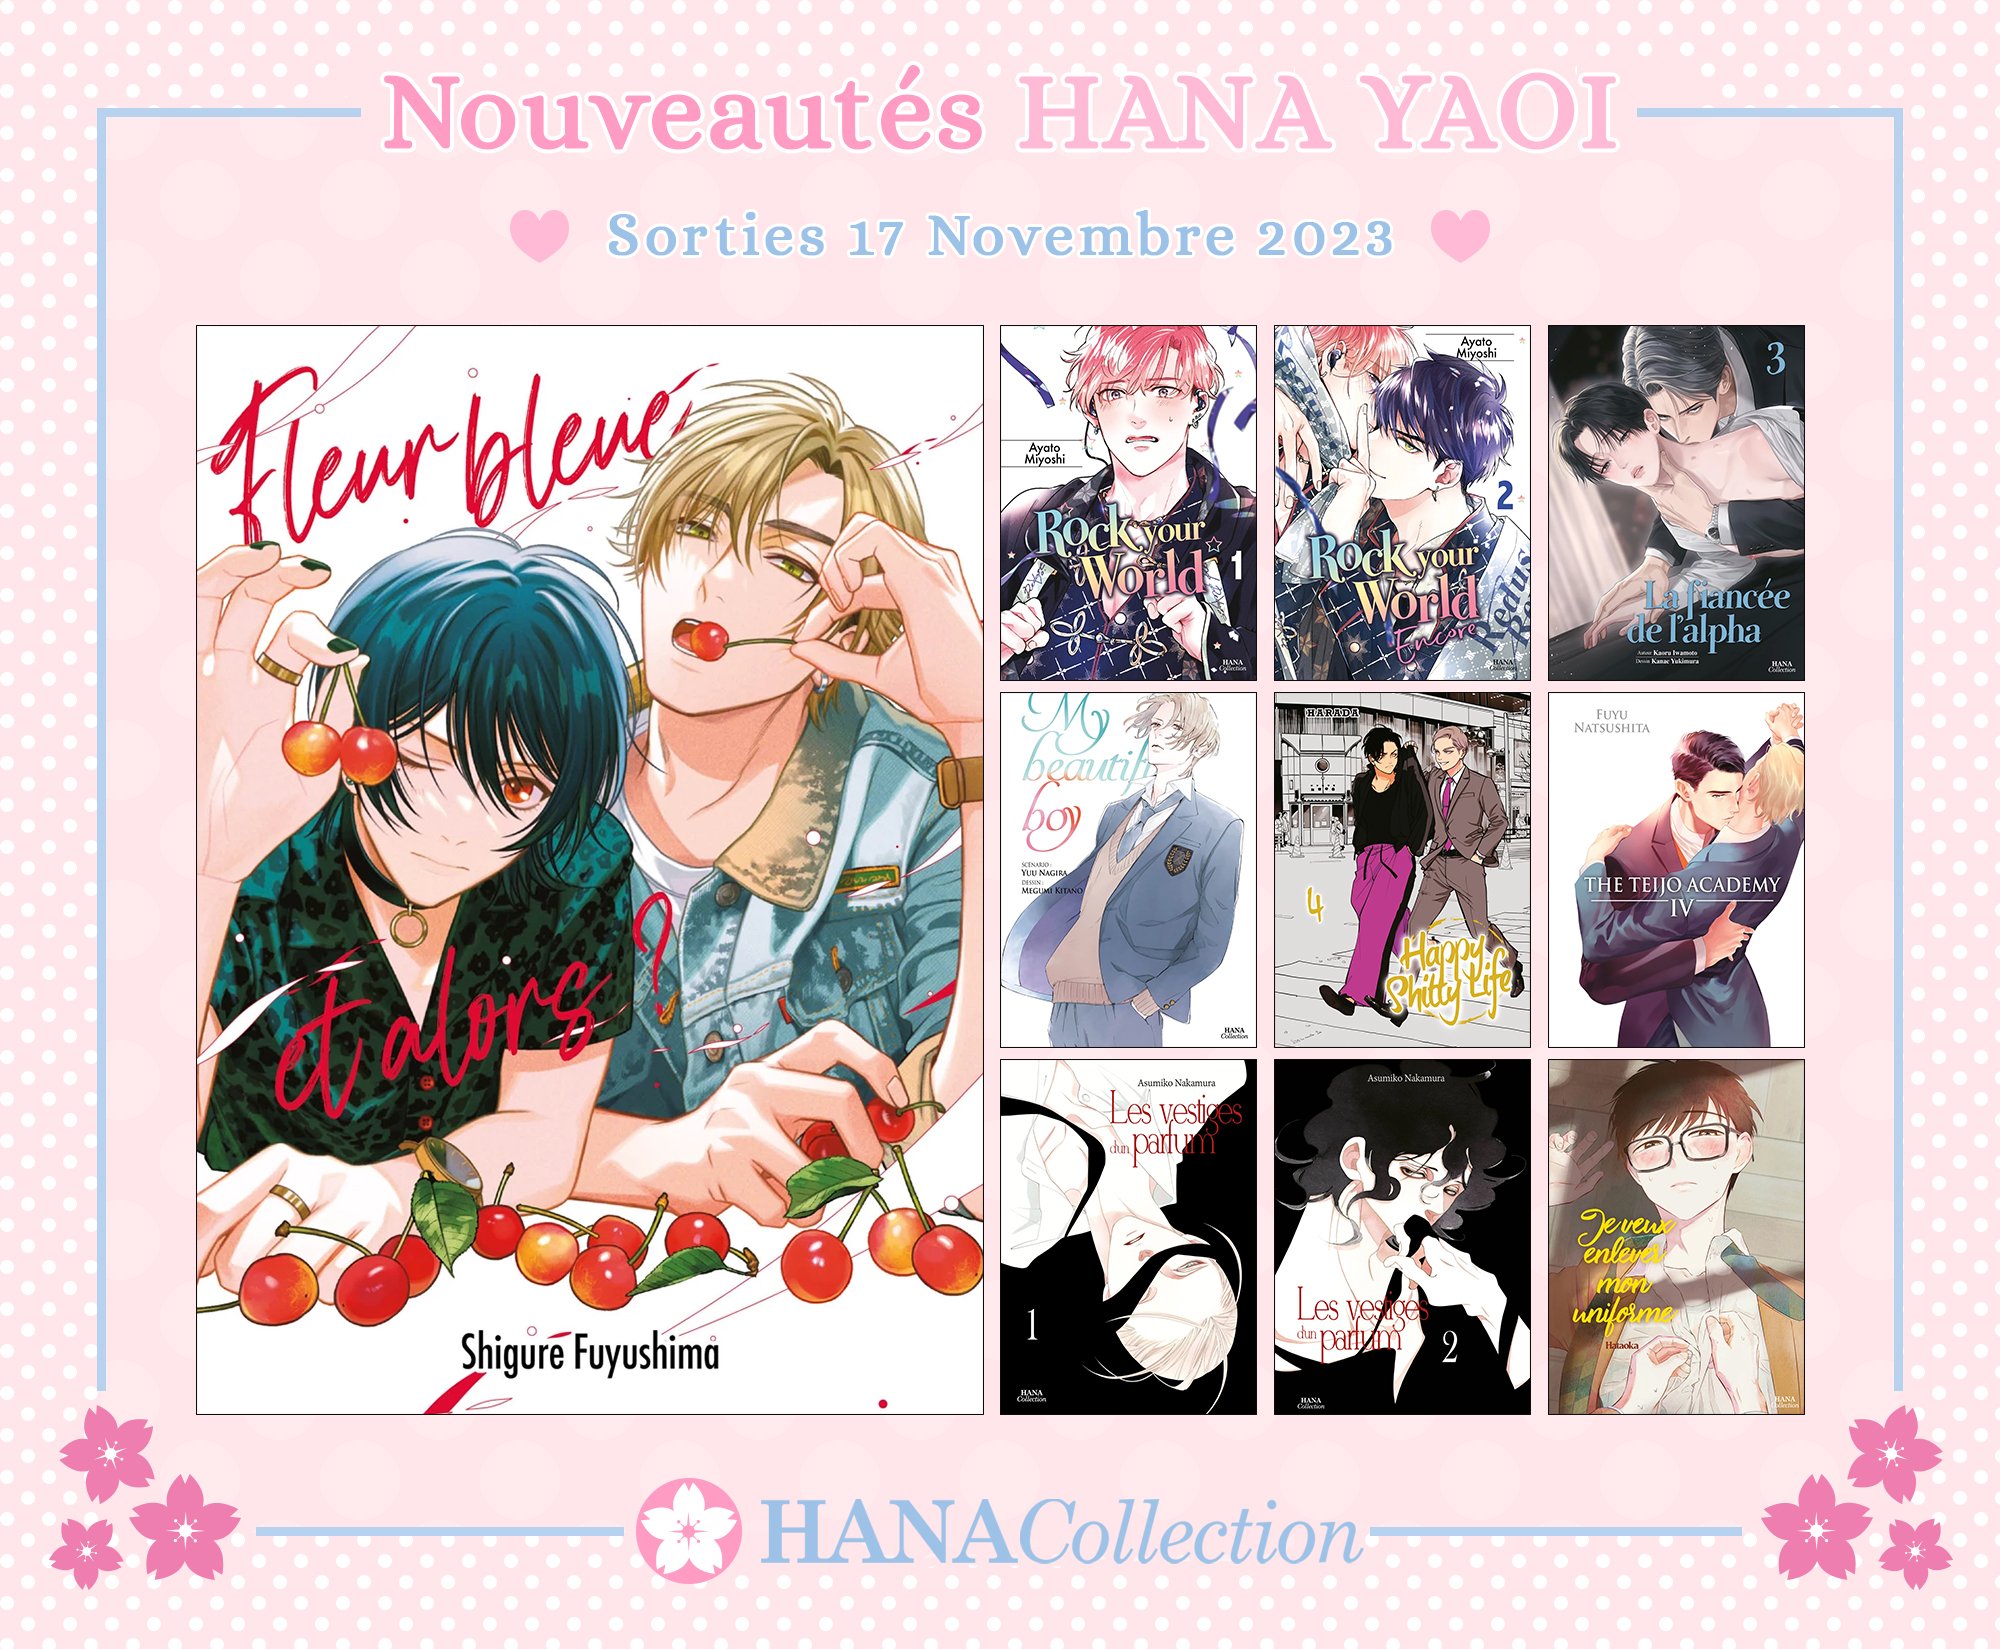 10 nouveaux Hana Collection disponibles